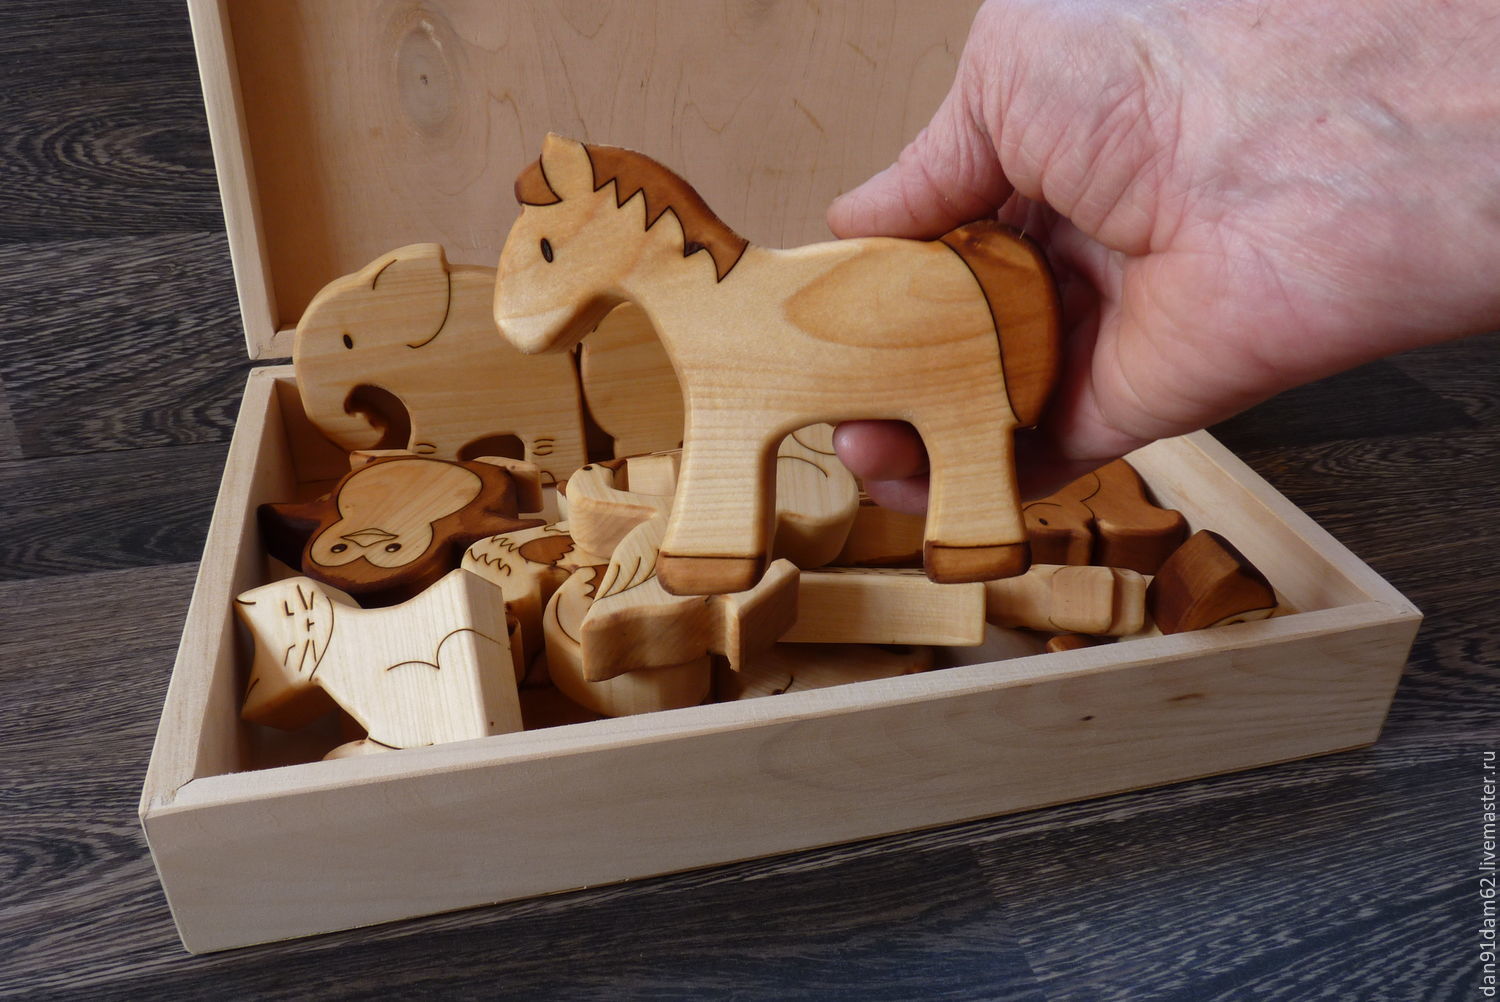 Как быстро сделать оригинальную игрушку из дерева: 12 идей